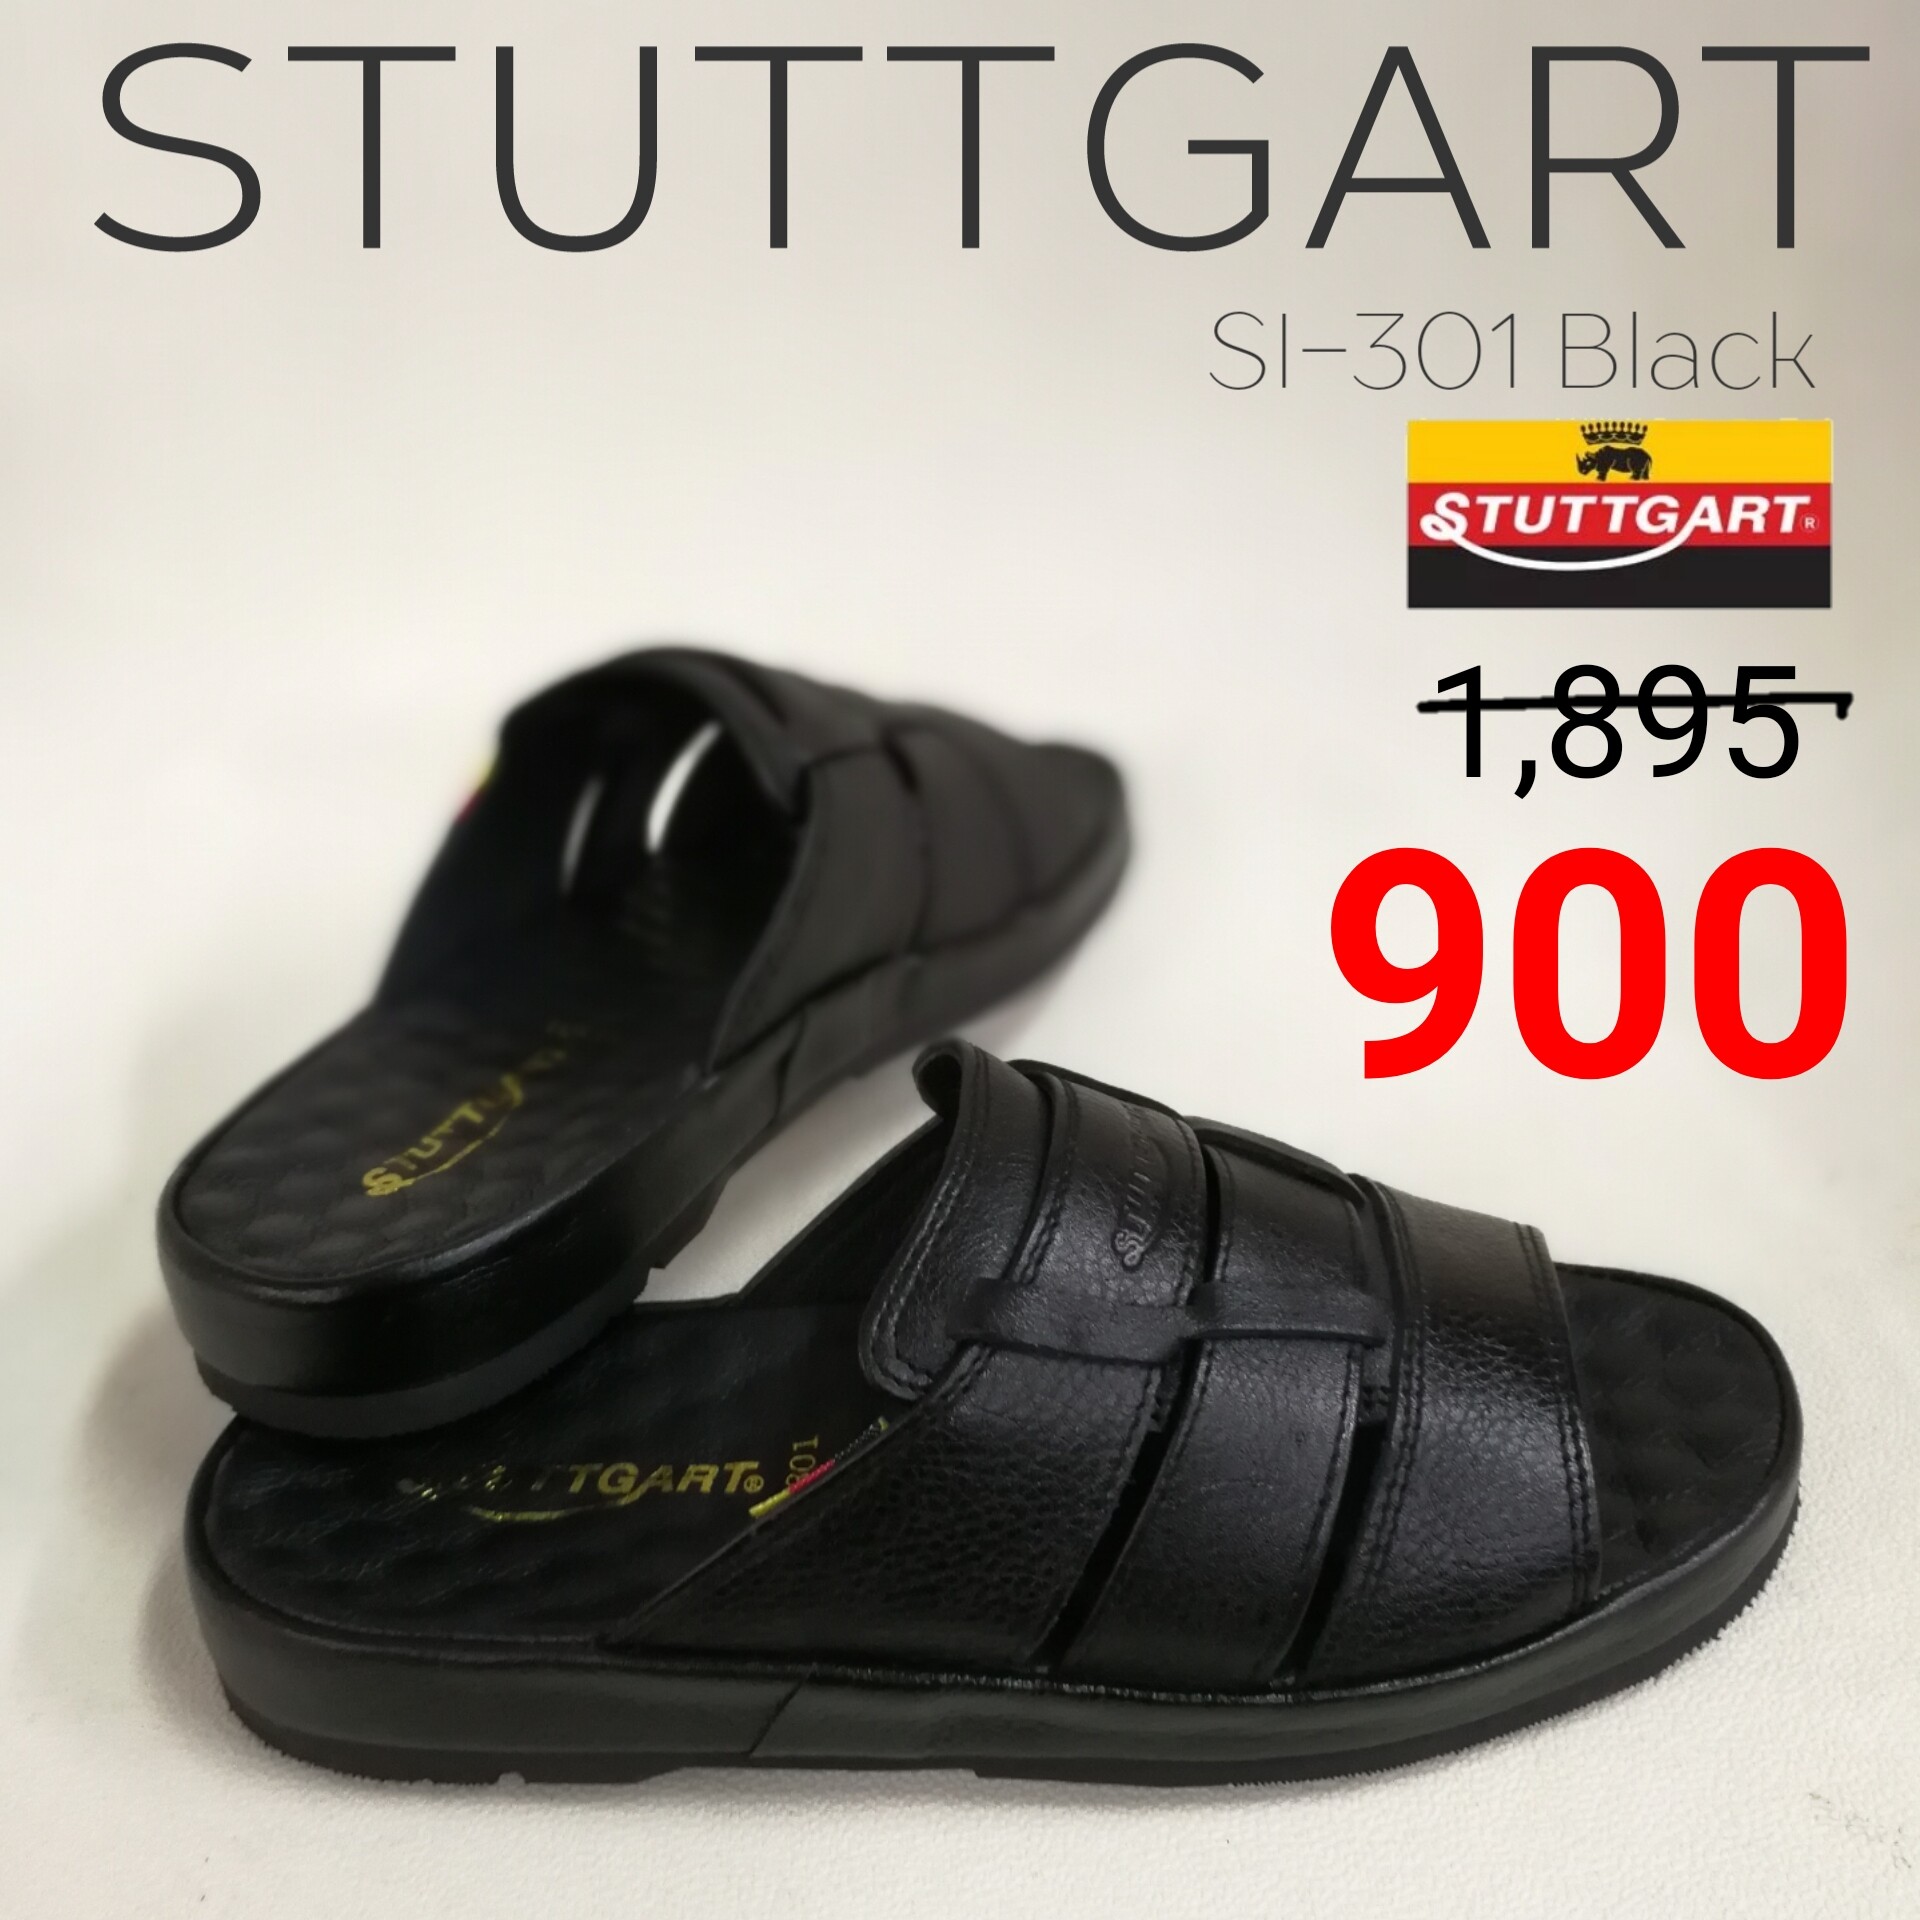 รองเท้าผู้ชาย STUTTGART SI-301 สี ดำ ขนาด EU 45 สี ดำขนาด EU 45